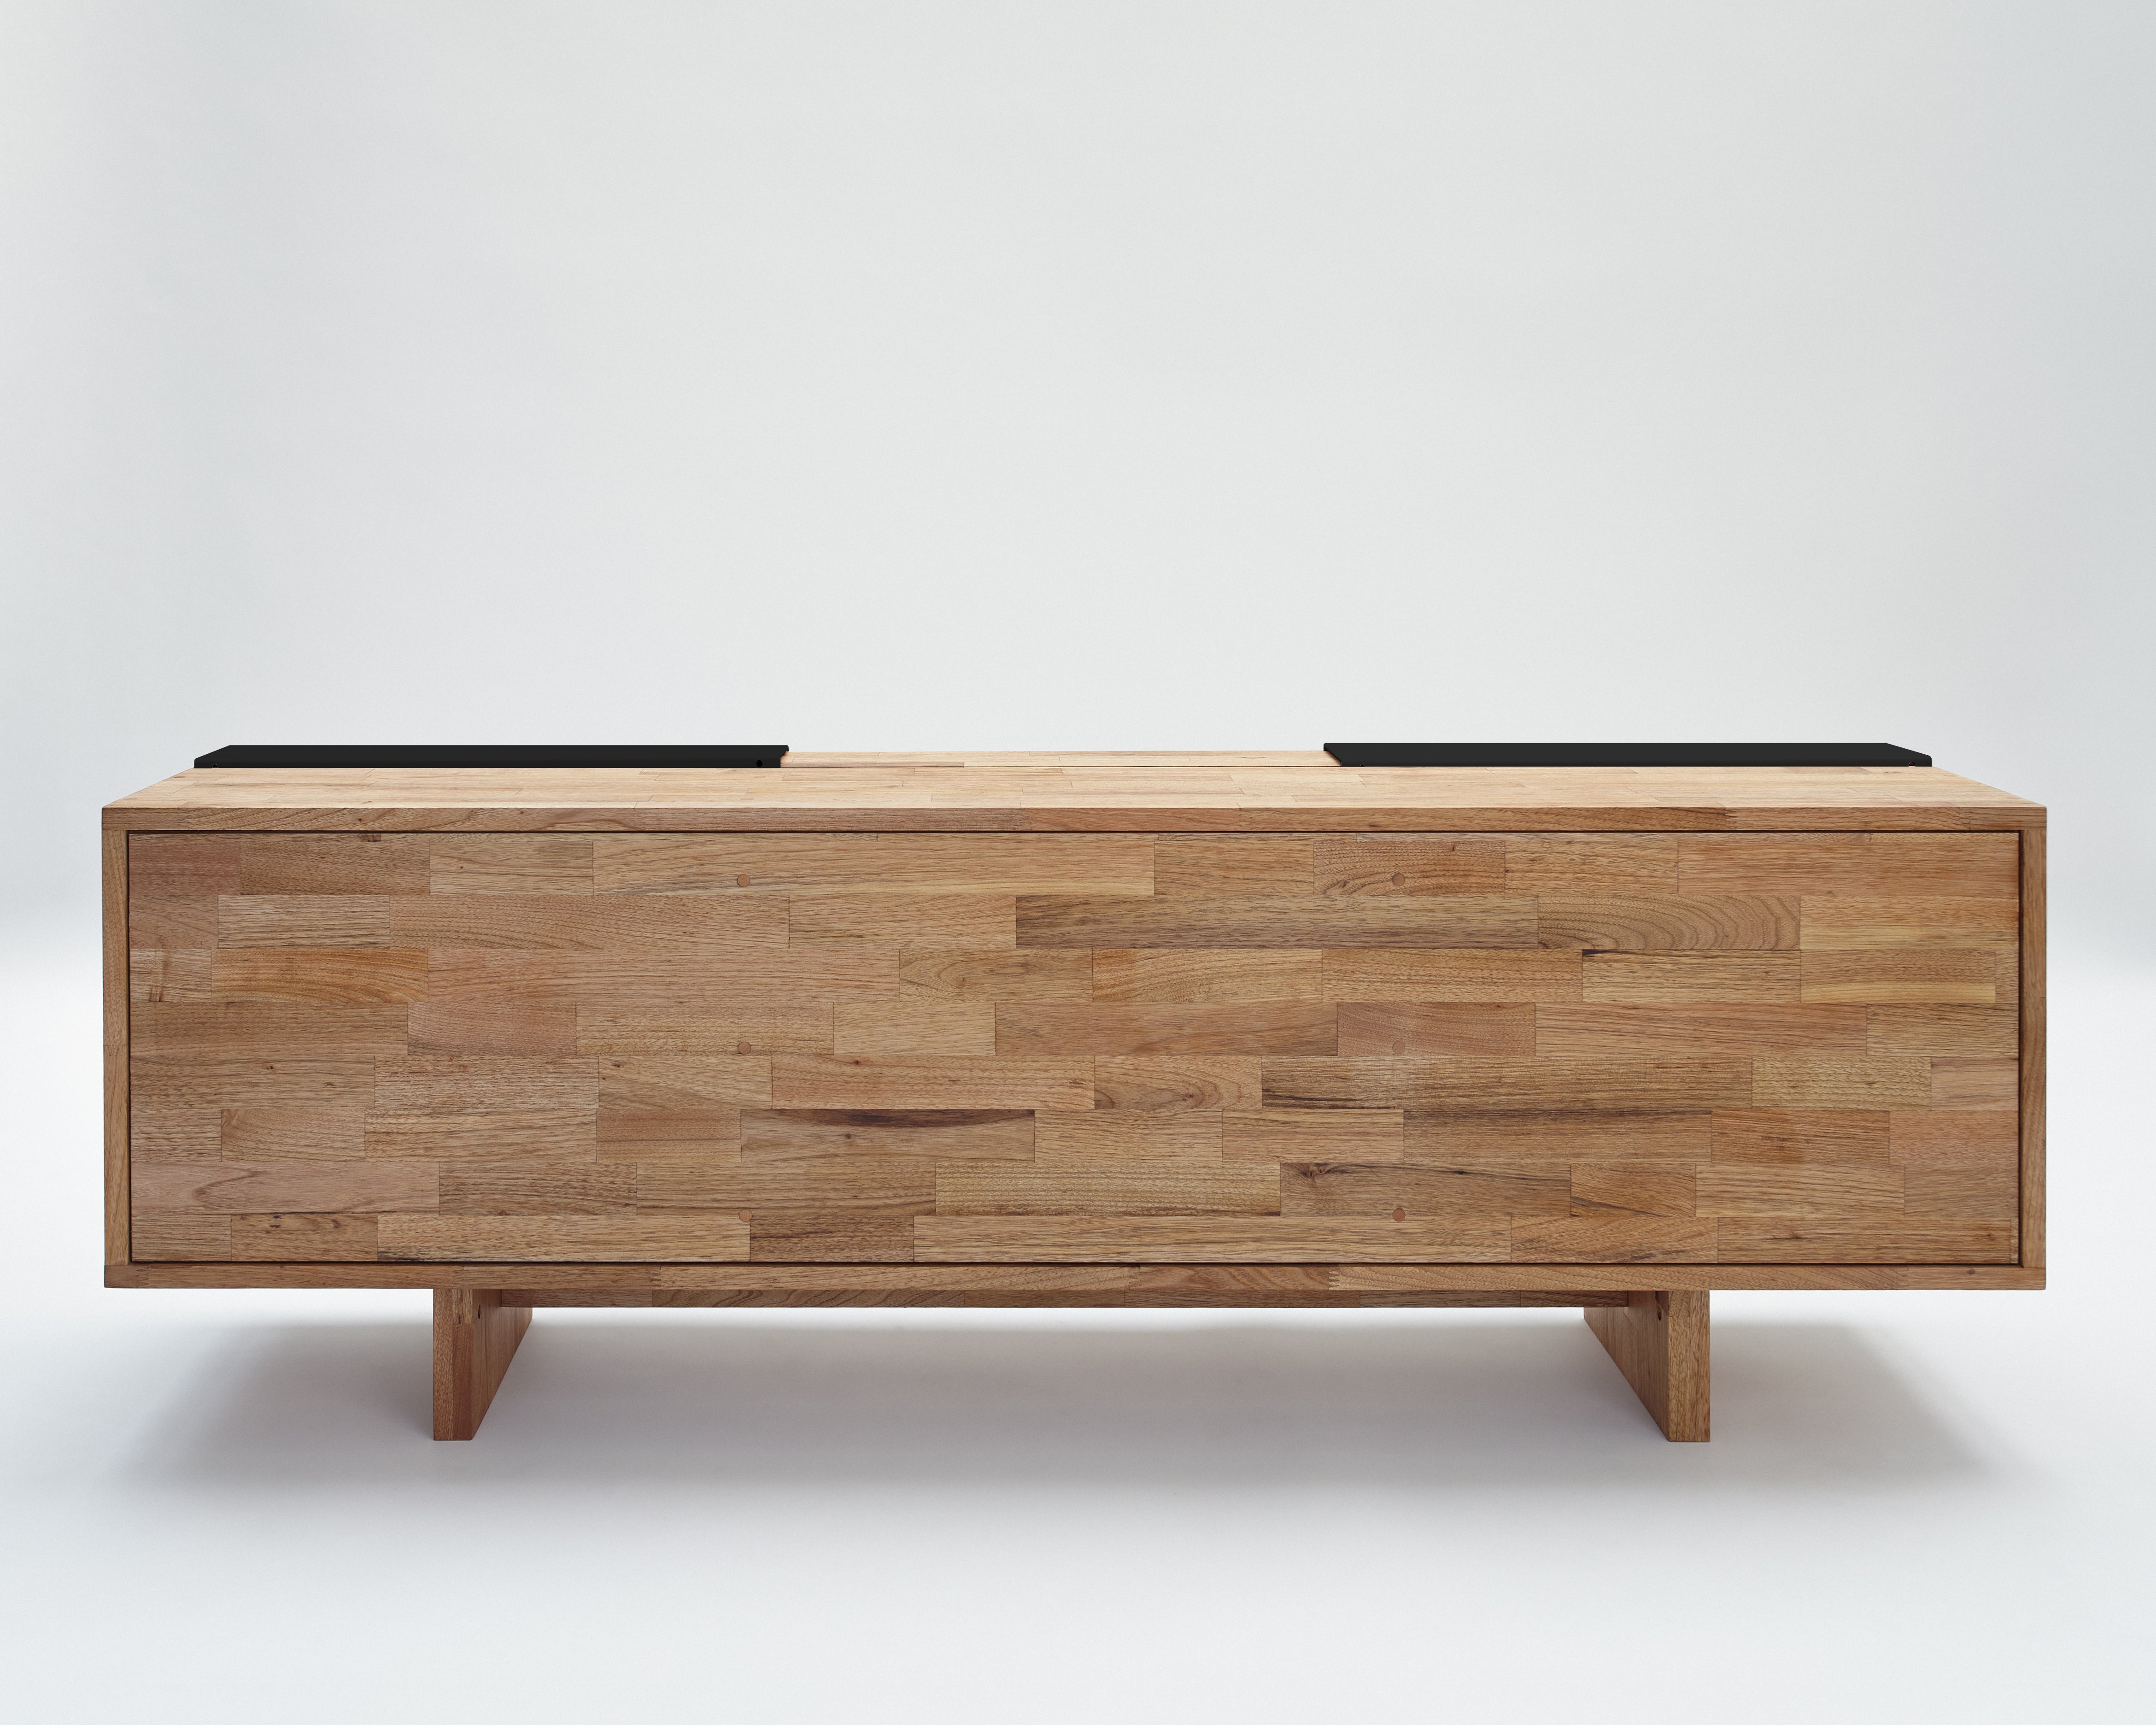 3X Shelf with Base- English Walnut, Matte Black Panels